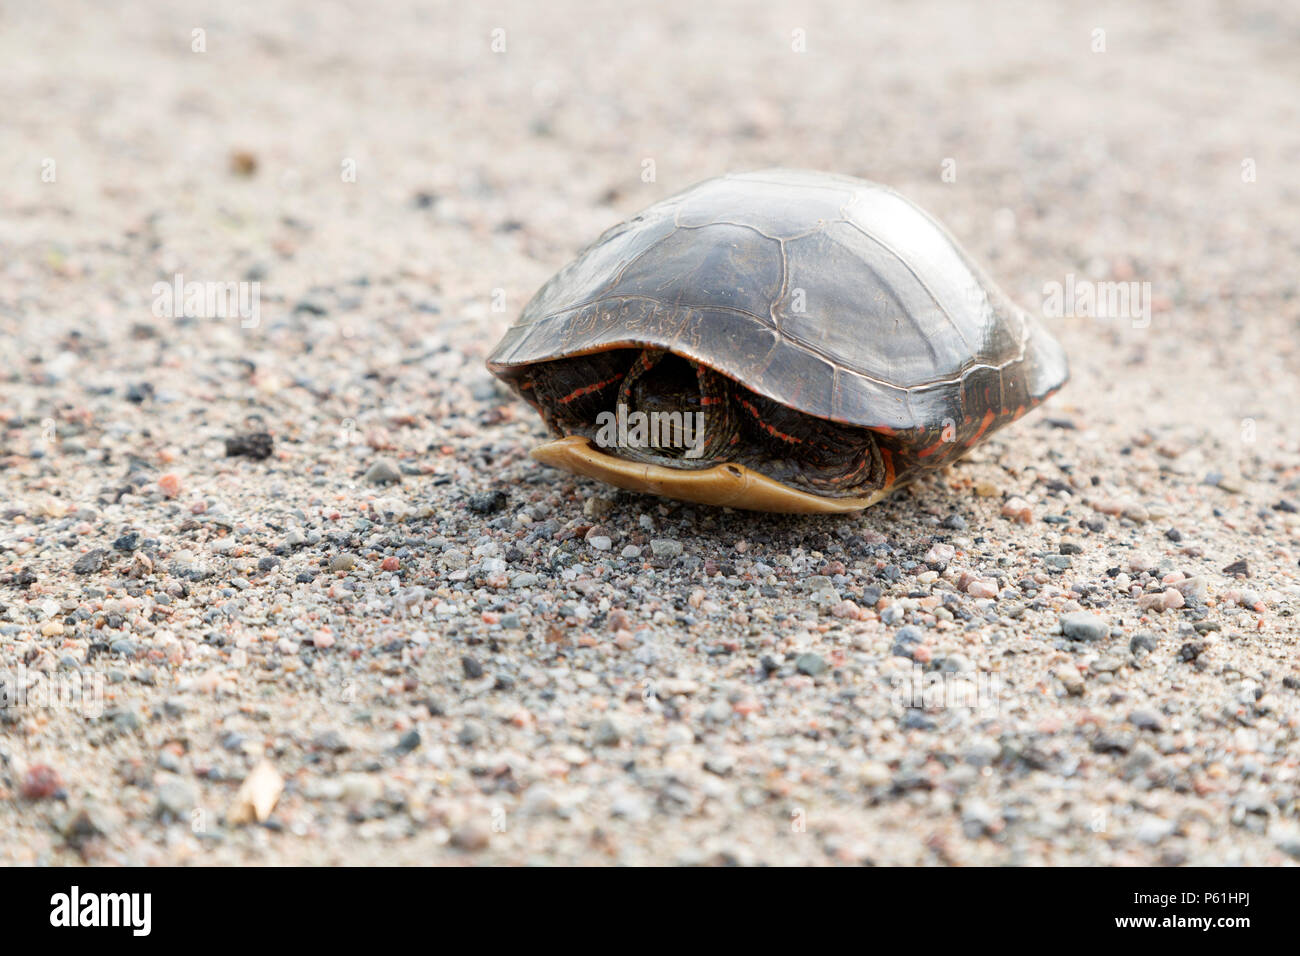 Eine gemalte Schildkröte (Chrysemys picta) auf einer Straße in Ontario, Kanada. Die Schildkröte hat in seine Shell zurückgezogen. Stockfoto